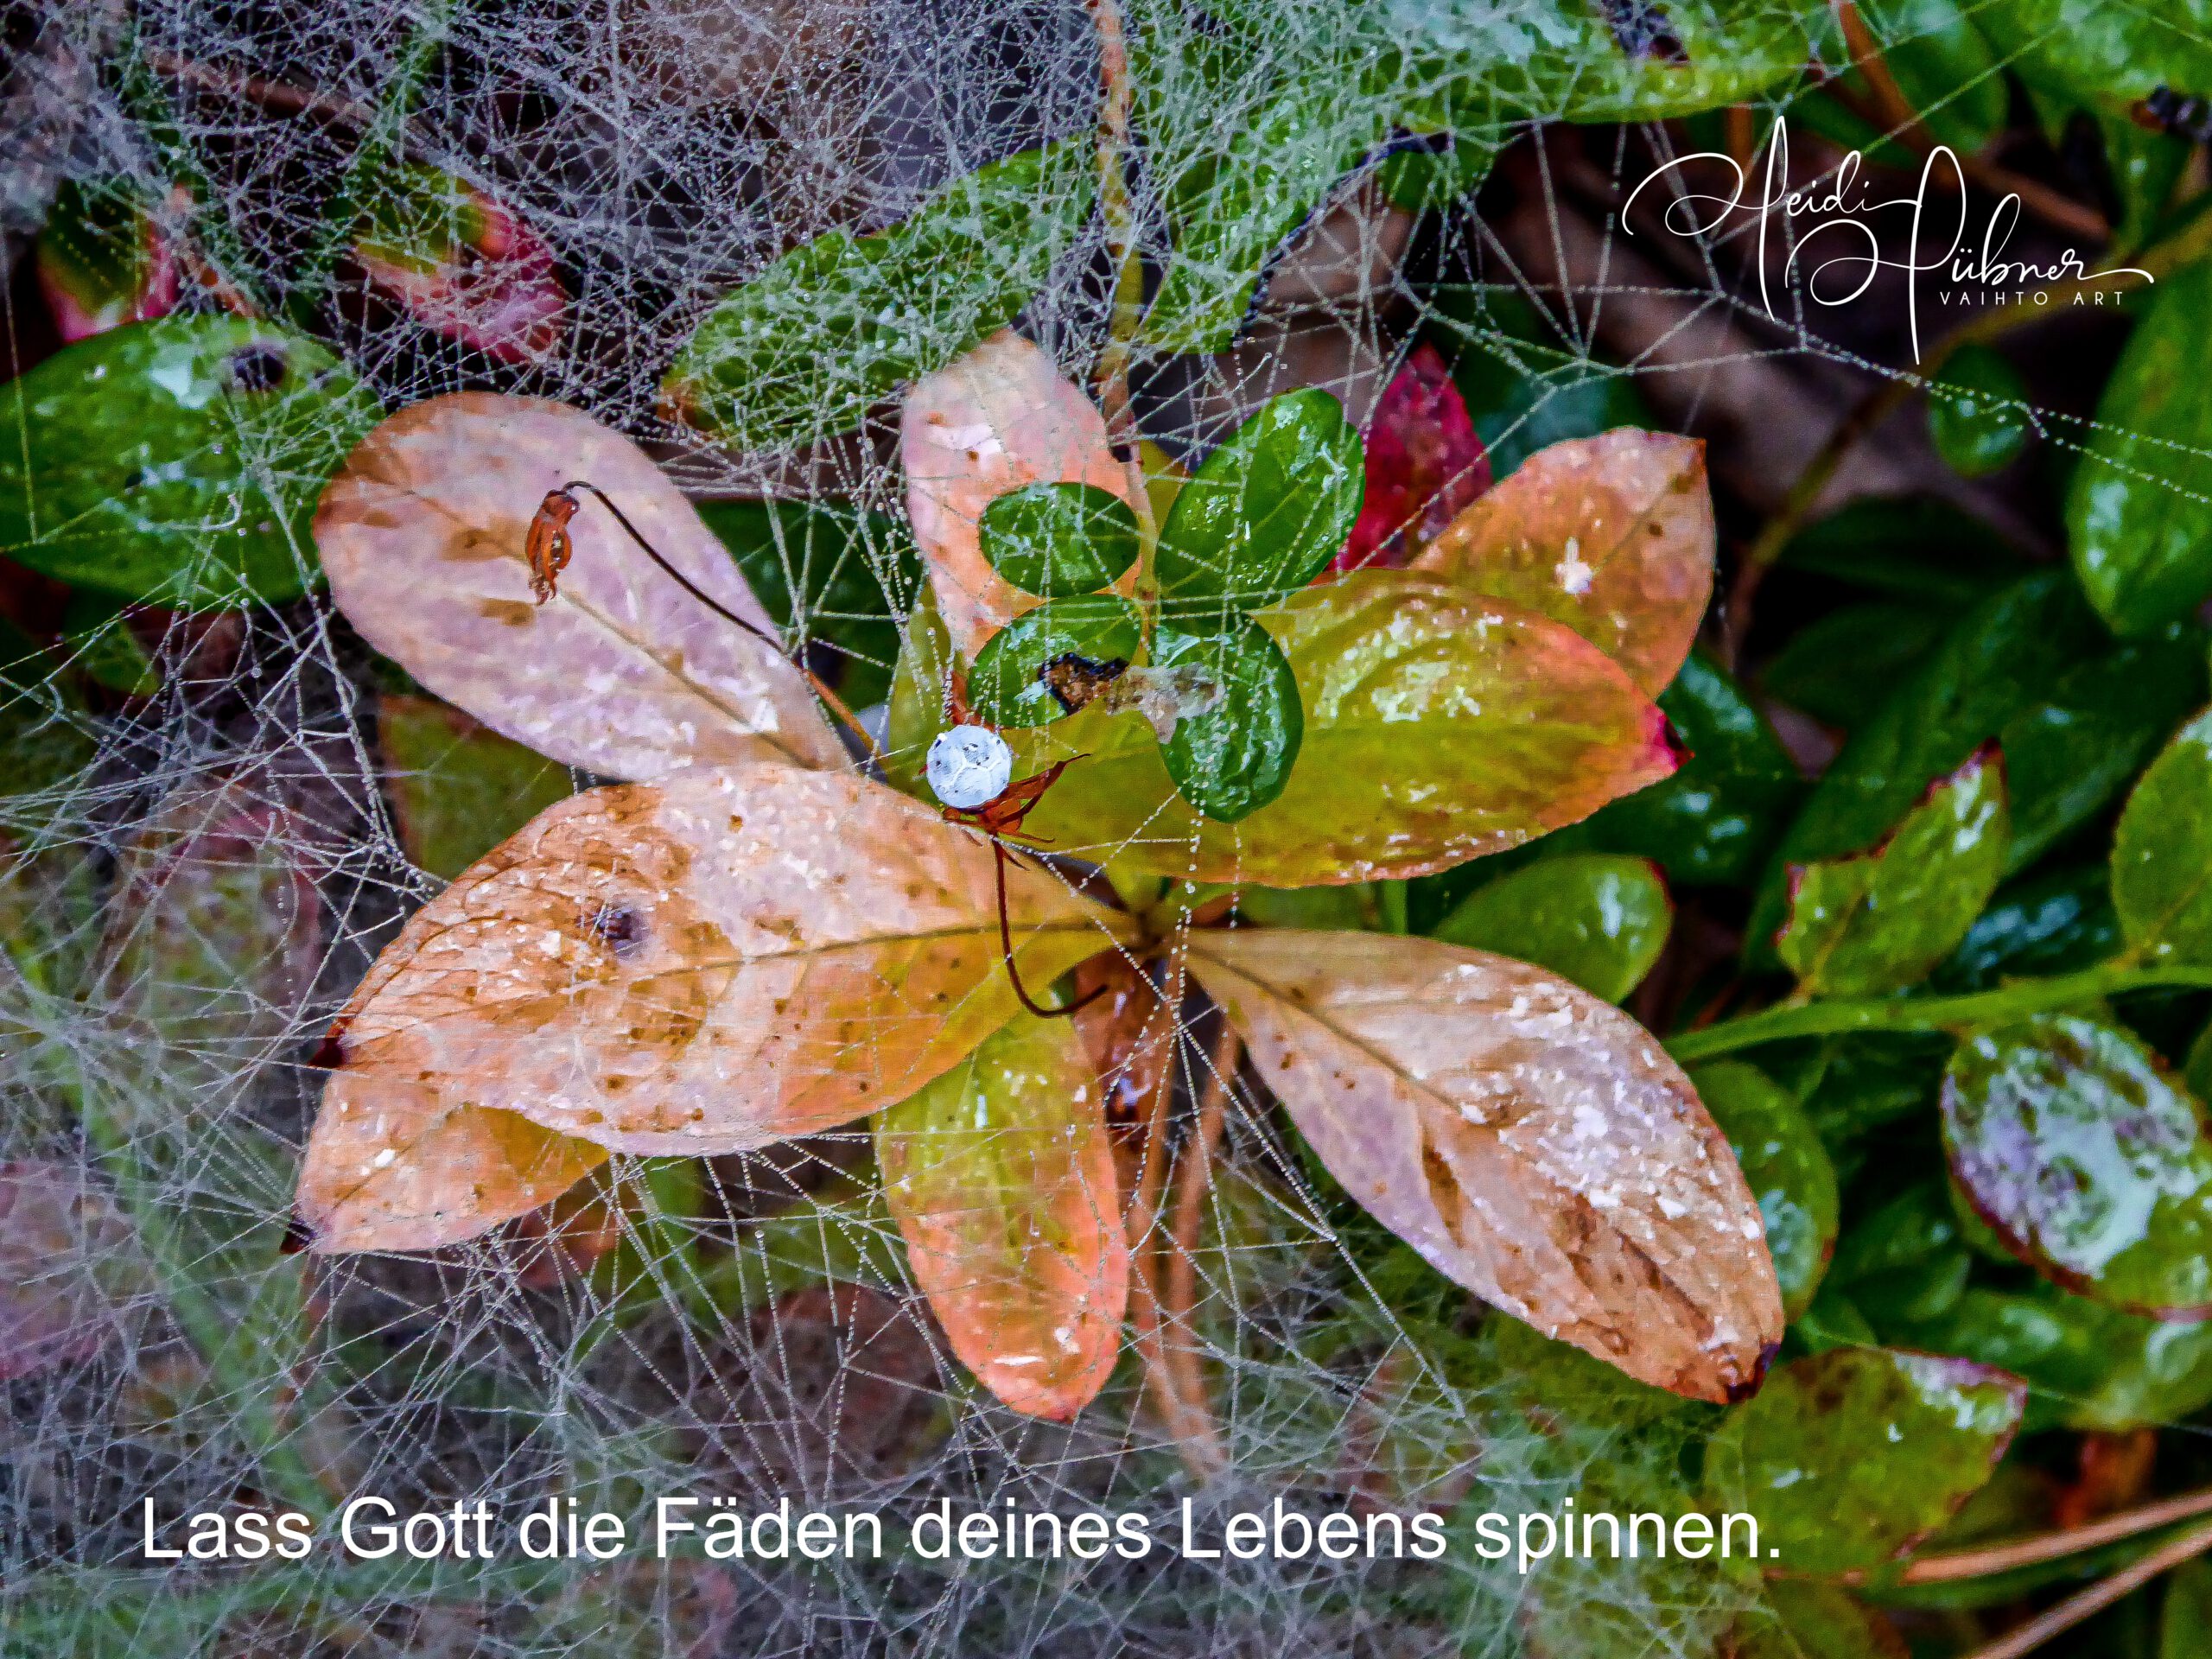 Spinnennetze am Waldboden Heidi Hübner vaihto art